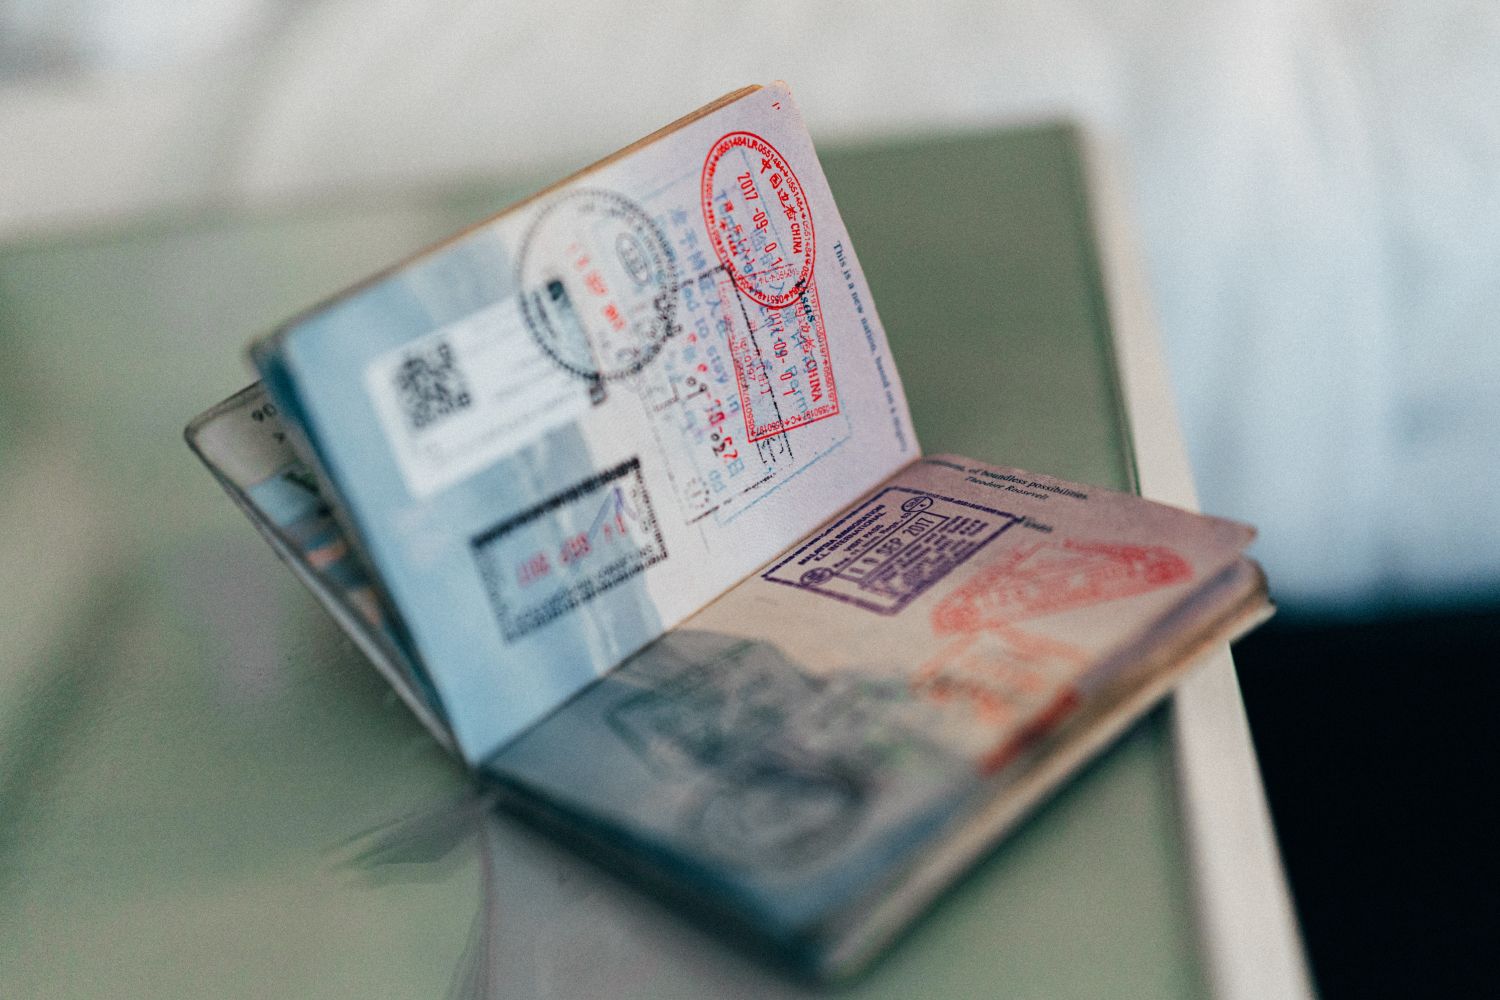  ◳ Passport (jpg) → (originál)